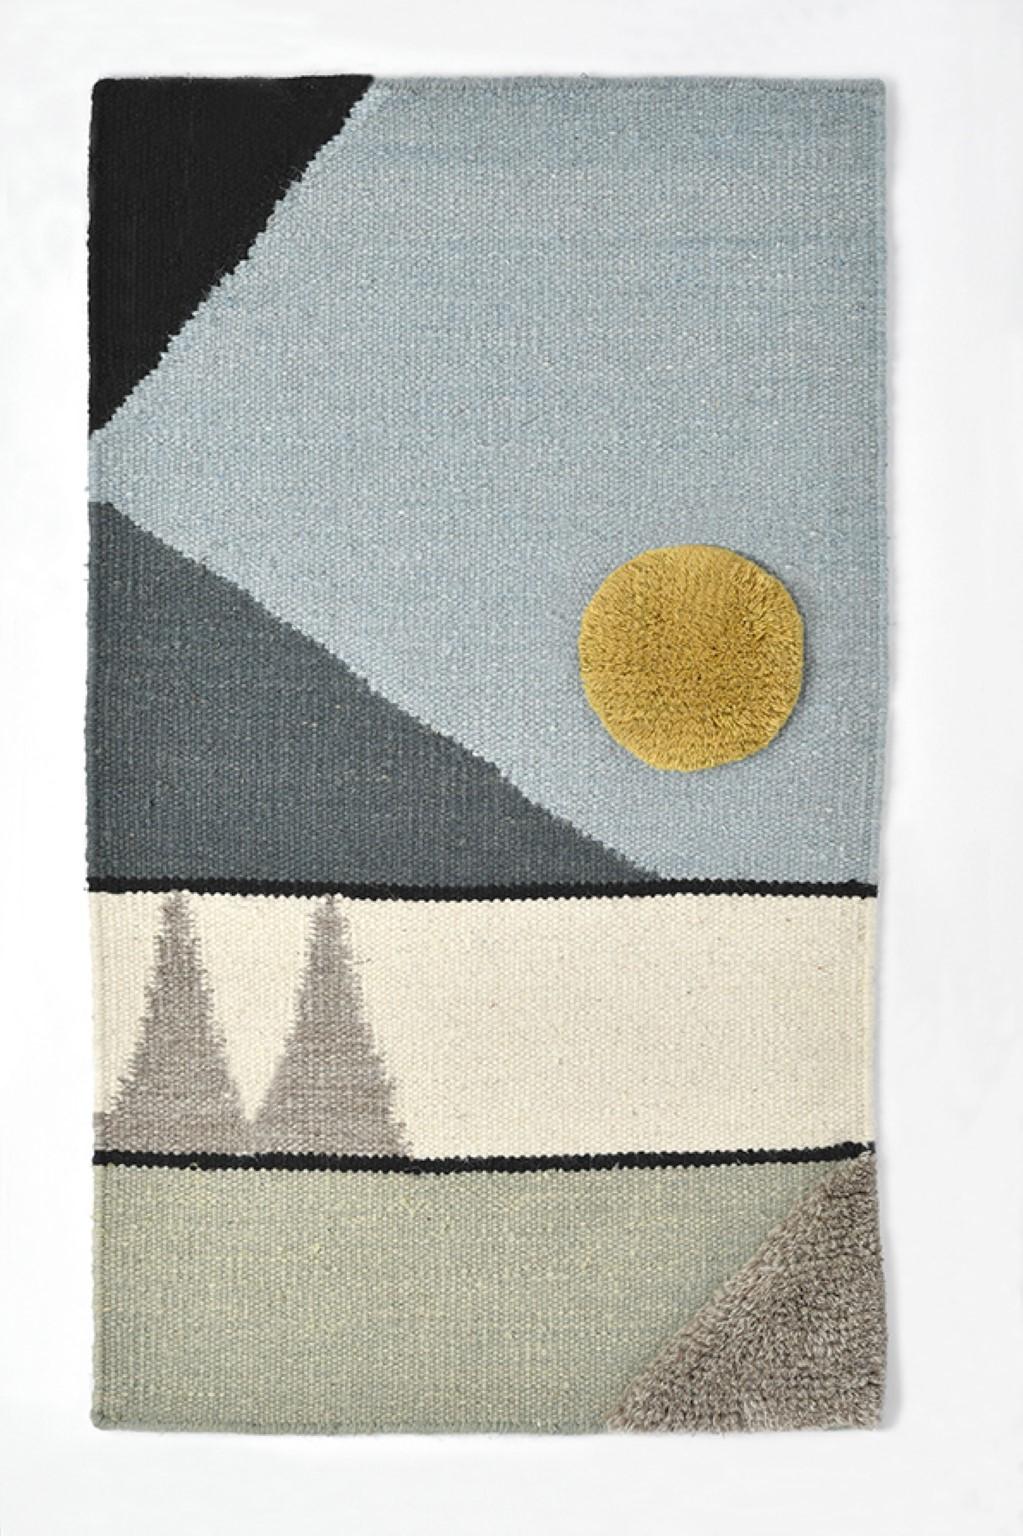 Handgeknüpftes Textilposter #7 von Lyk Carpet
Abmessungen: B 50 x L 80 cm.
MATERIALIEN: 100% tibetische Hochlandwolle, handgekämmte und handgesponnene Schurwolle, natürliche pflanzengefärbte Wolle, 100 Knoten pro Quadratzoll.
Handgeknüpfte manuelle